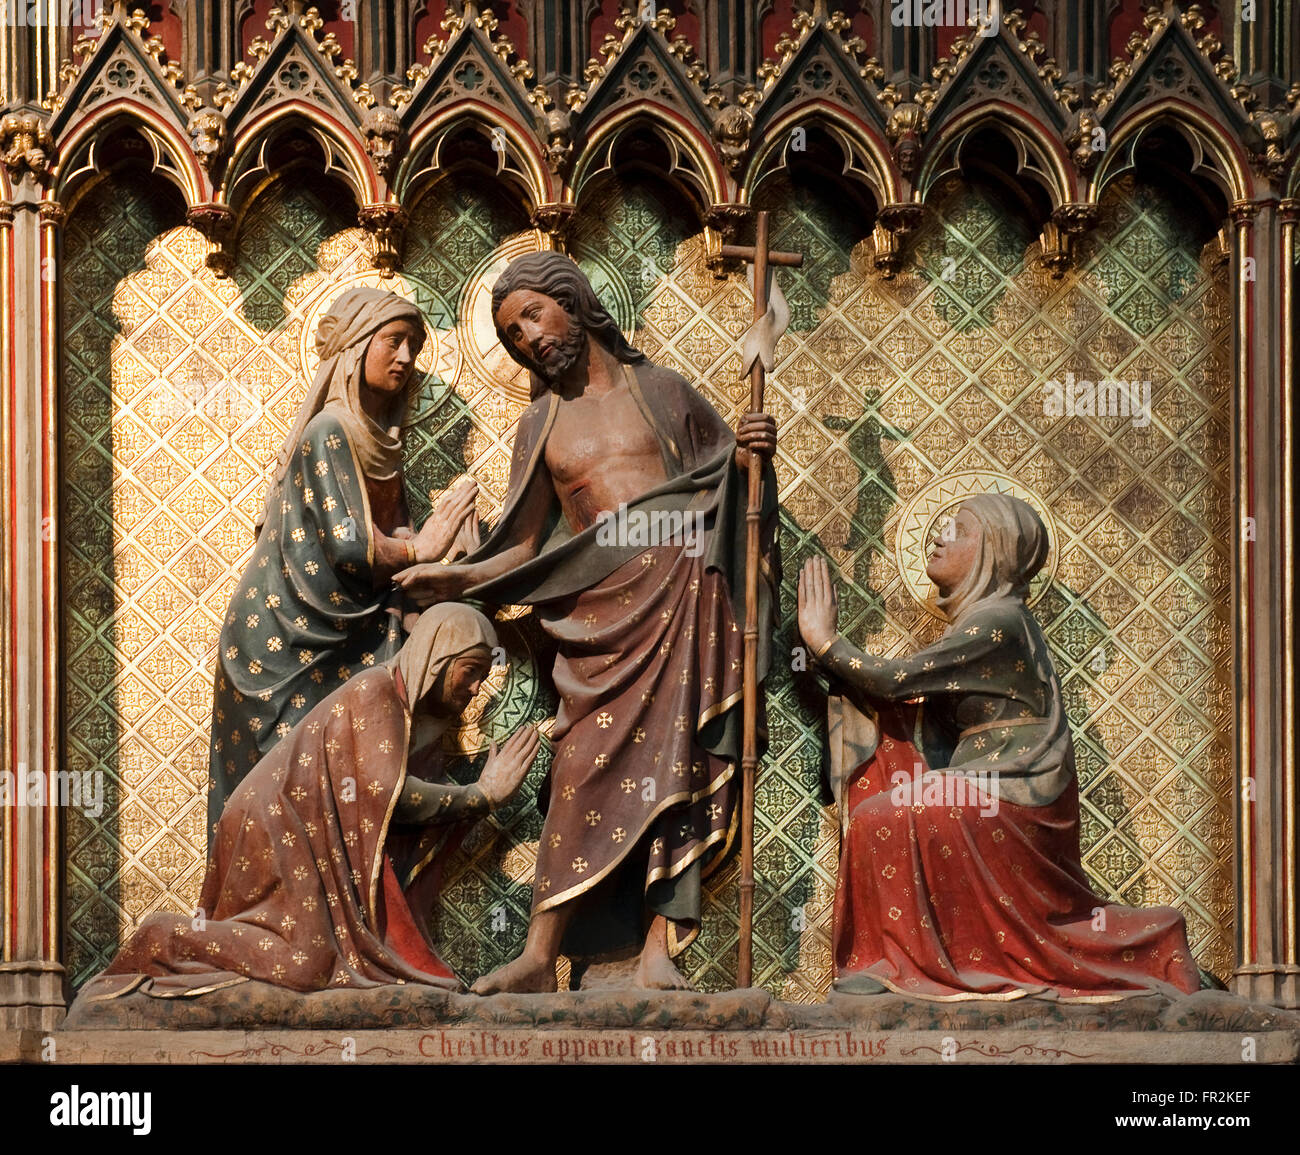 Scène de la vie du Christ, le Christ ressuscité apparaît pour les saintes femmes, Notre Dame de Paris, Paris, France Banque D'Images